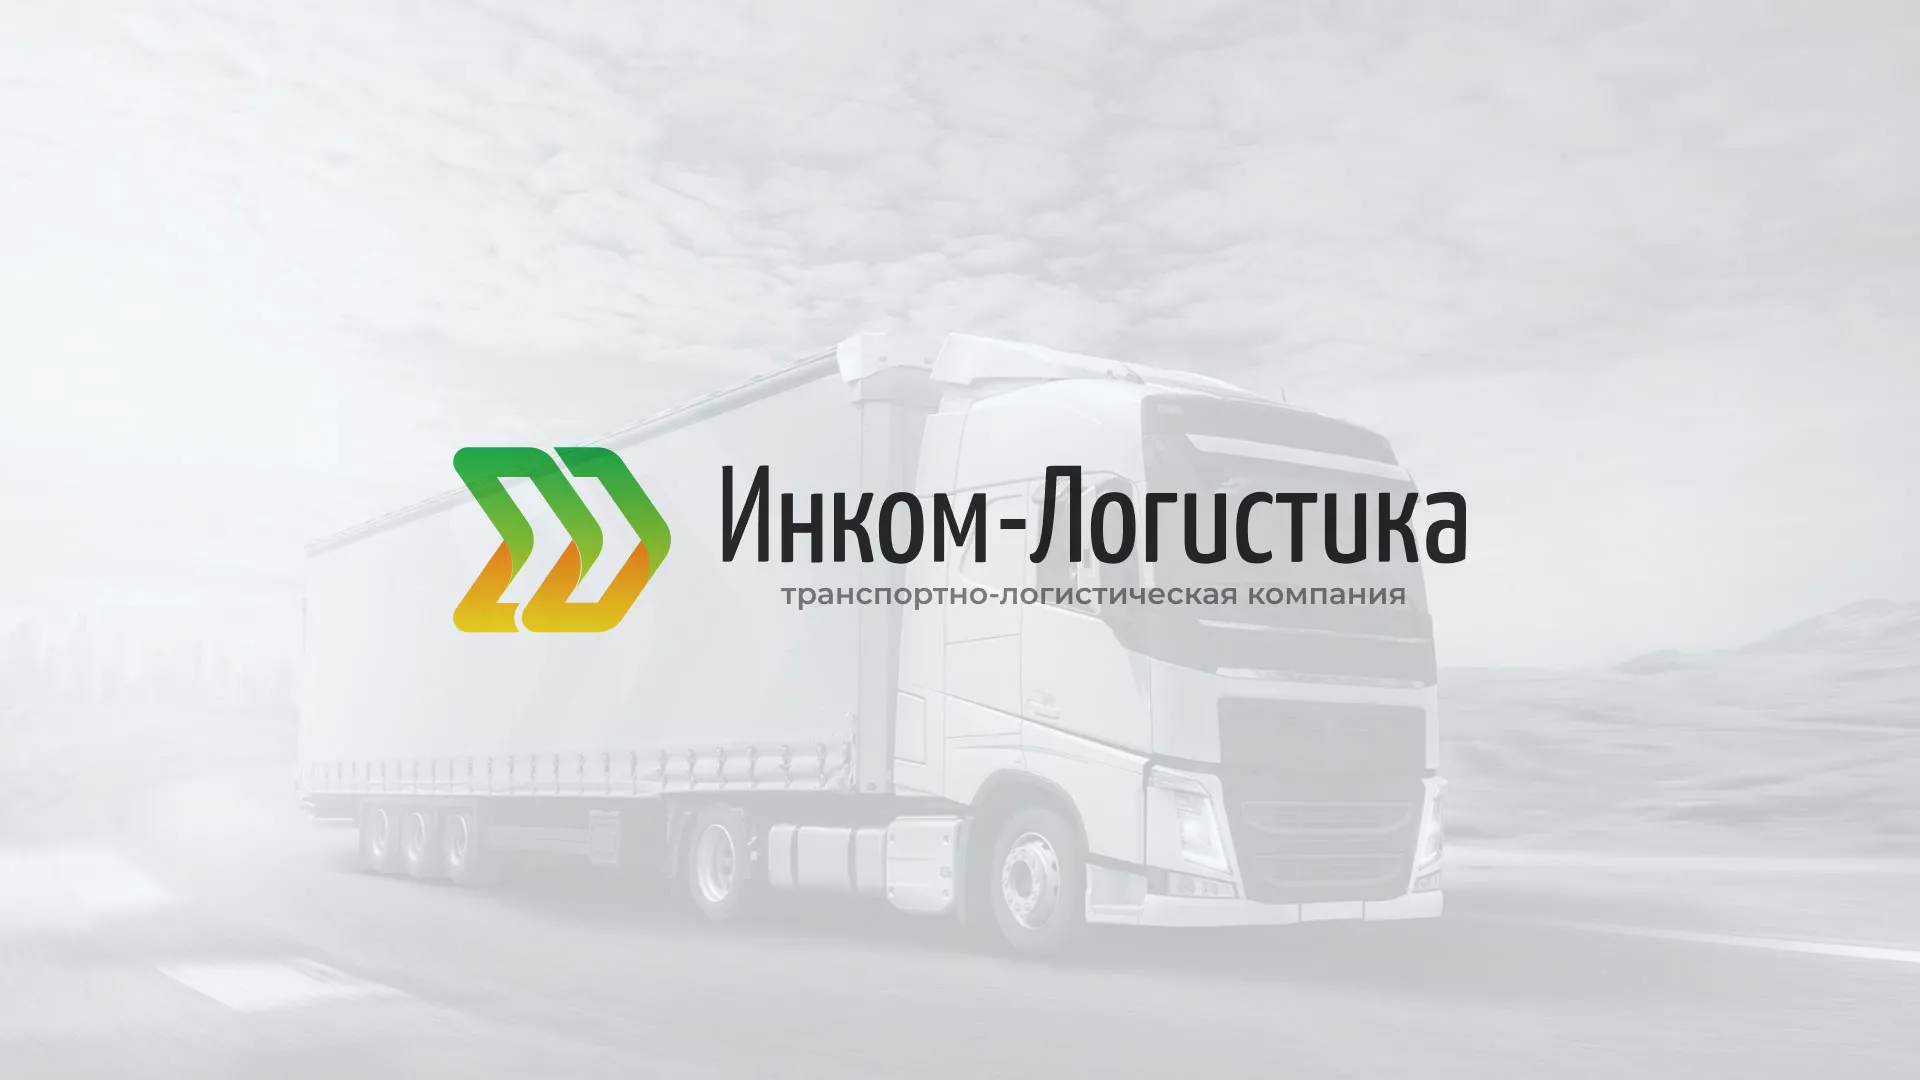 Разработка логотипа и сайта компании «Инком-Логистика» в Боровске